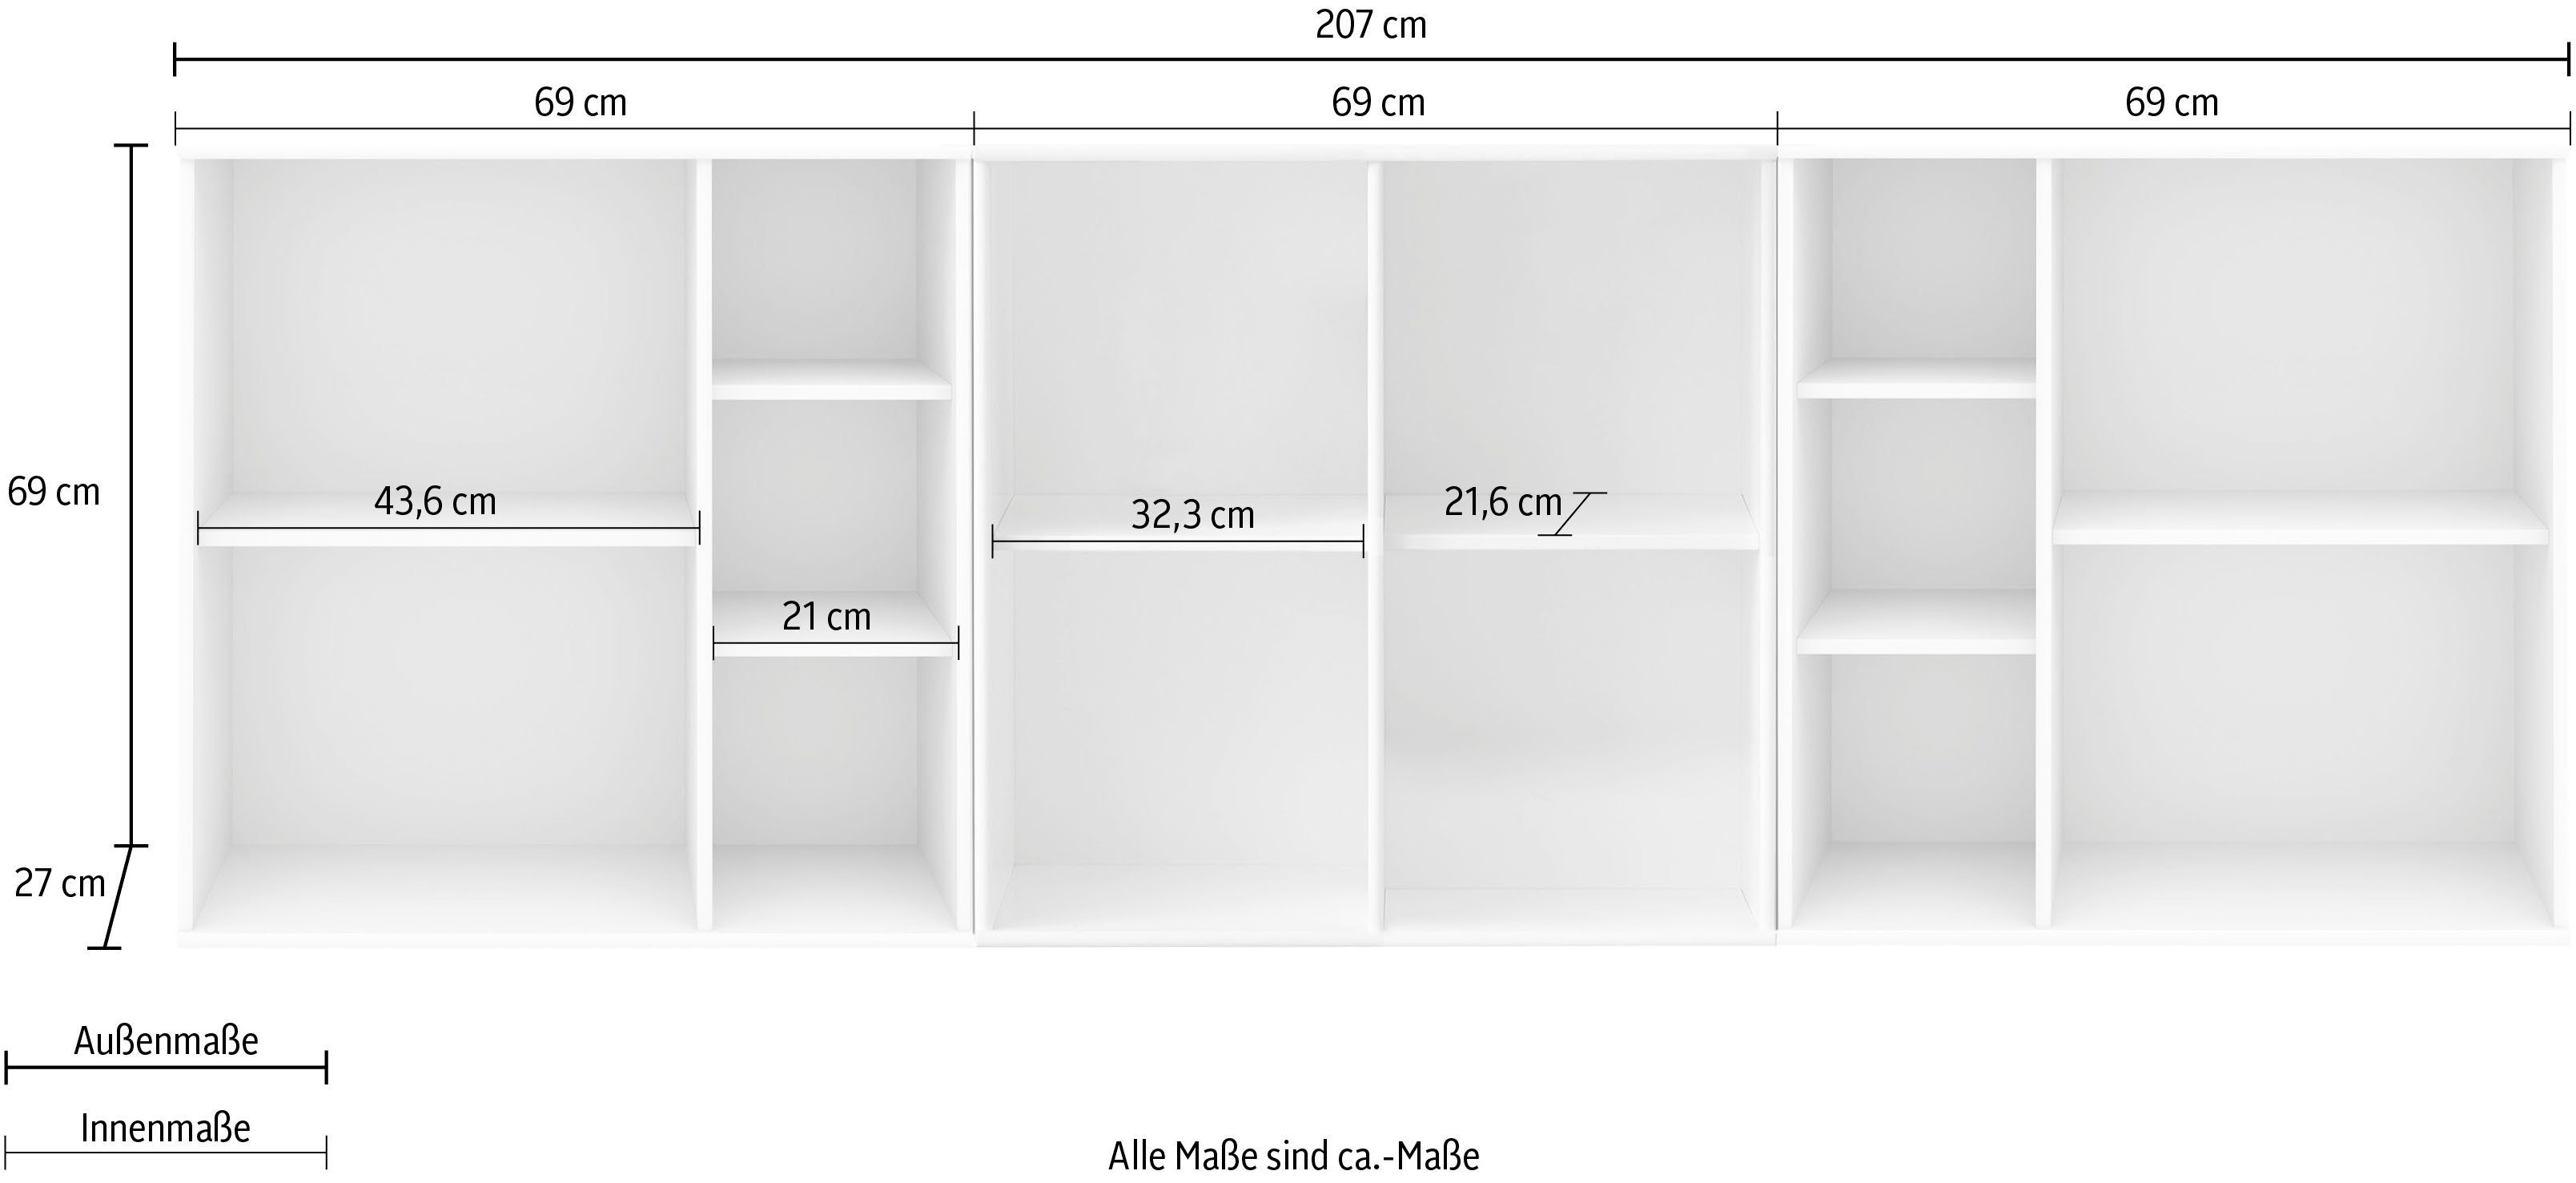 207cm 3 Hammel Mistral Furniture Breite aus Kubus, Kombination Modulen, Bücherregal